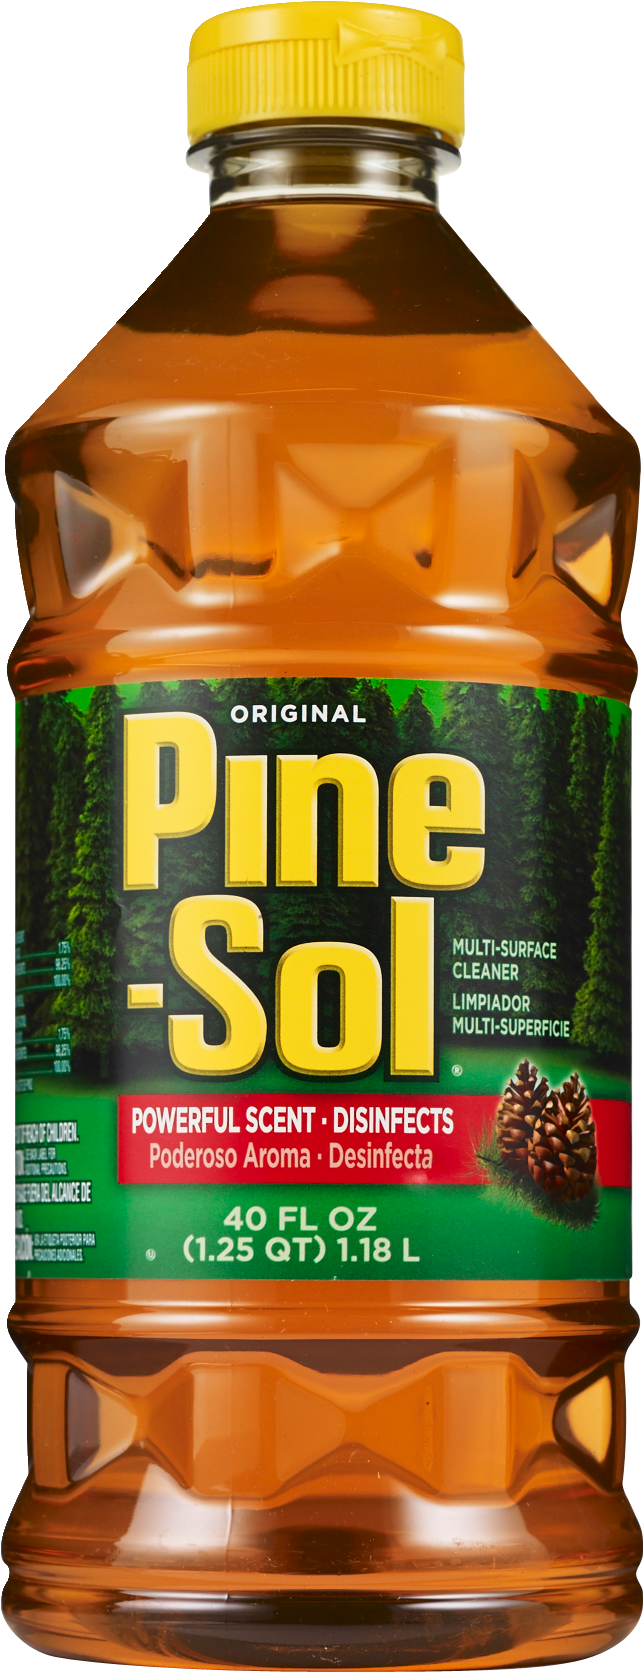 Clorox Pine-Sol - Limpiador de múltiples superficies